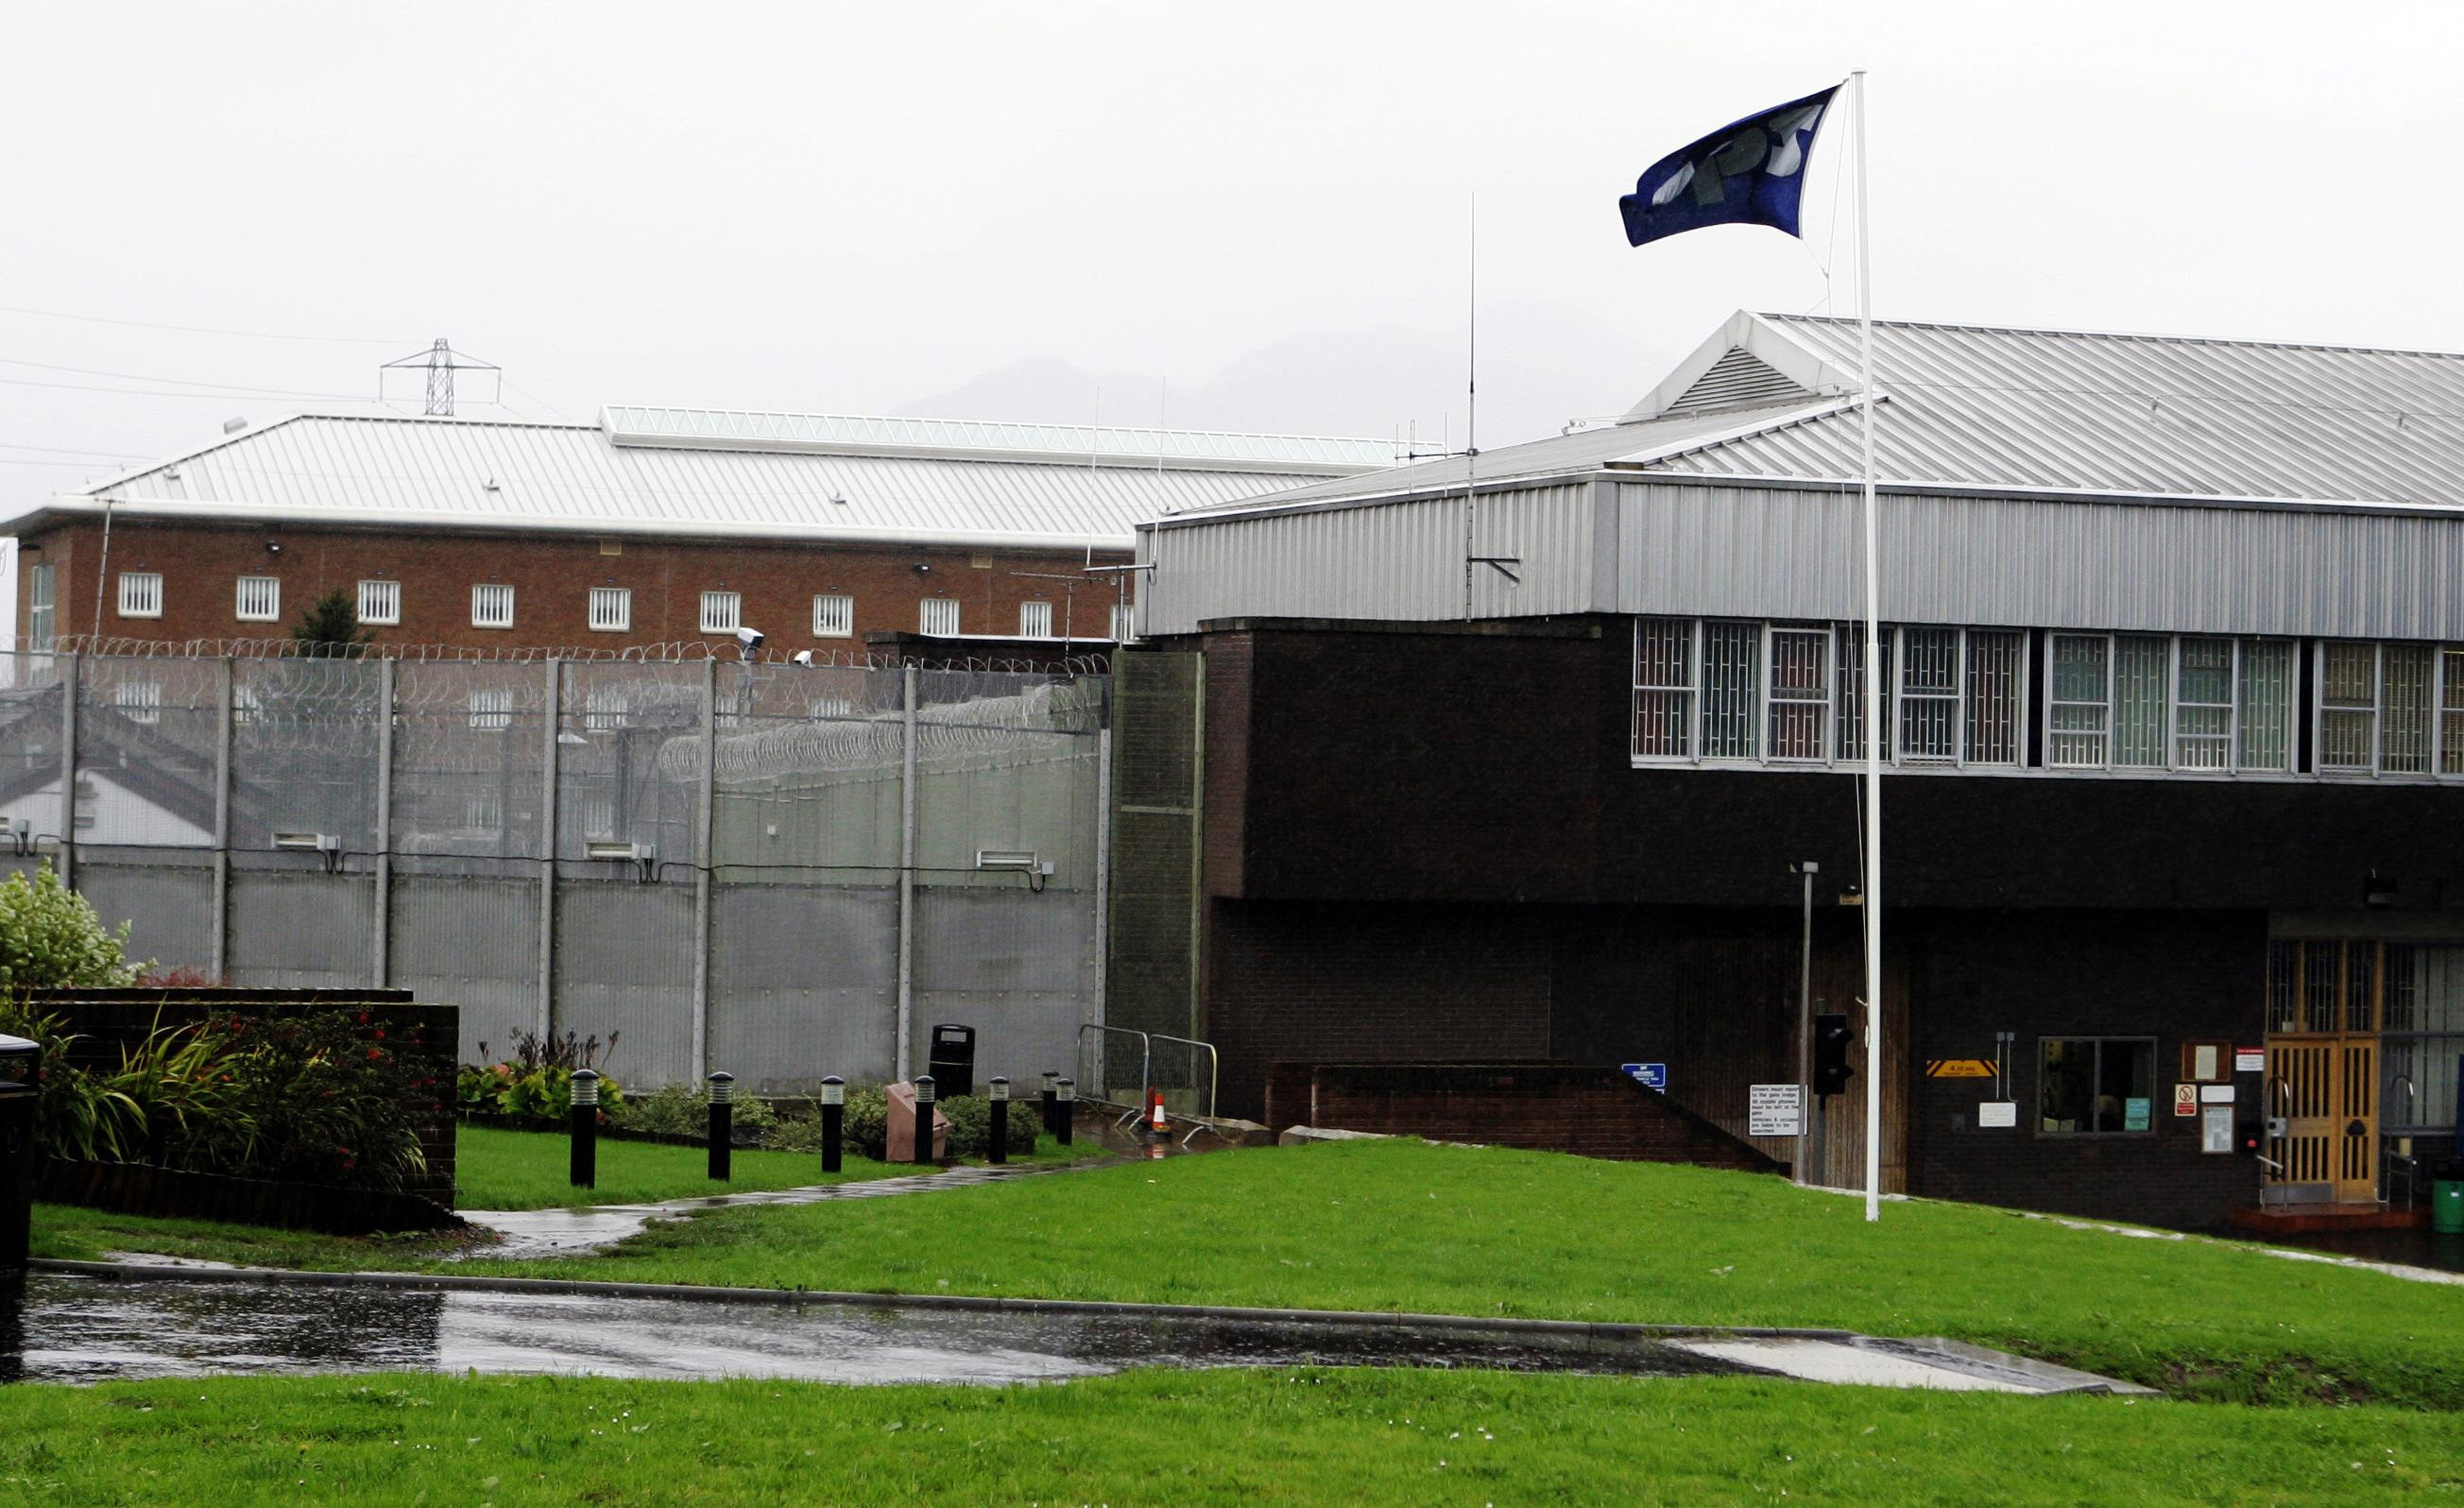 Glenochil Prison, in Clackmannanshire